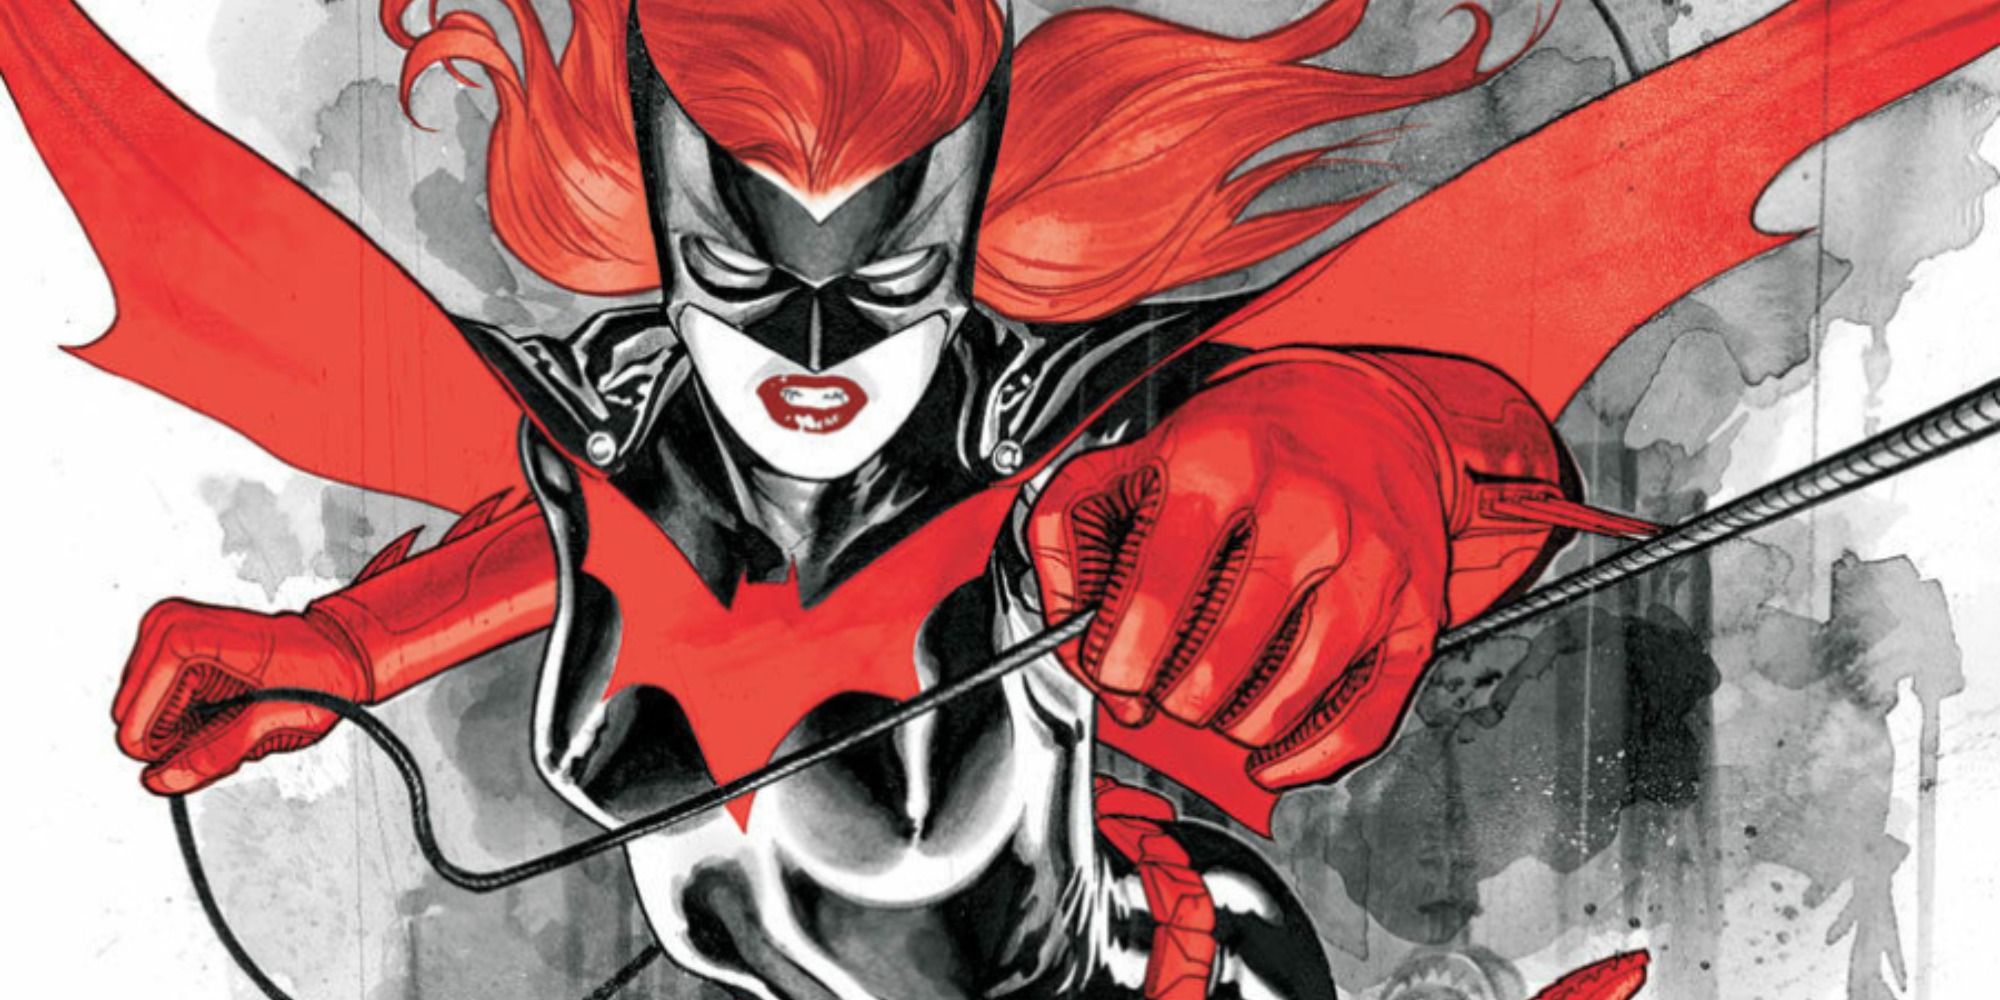 DC Comics Batwoman brandishing a weapon